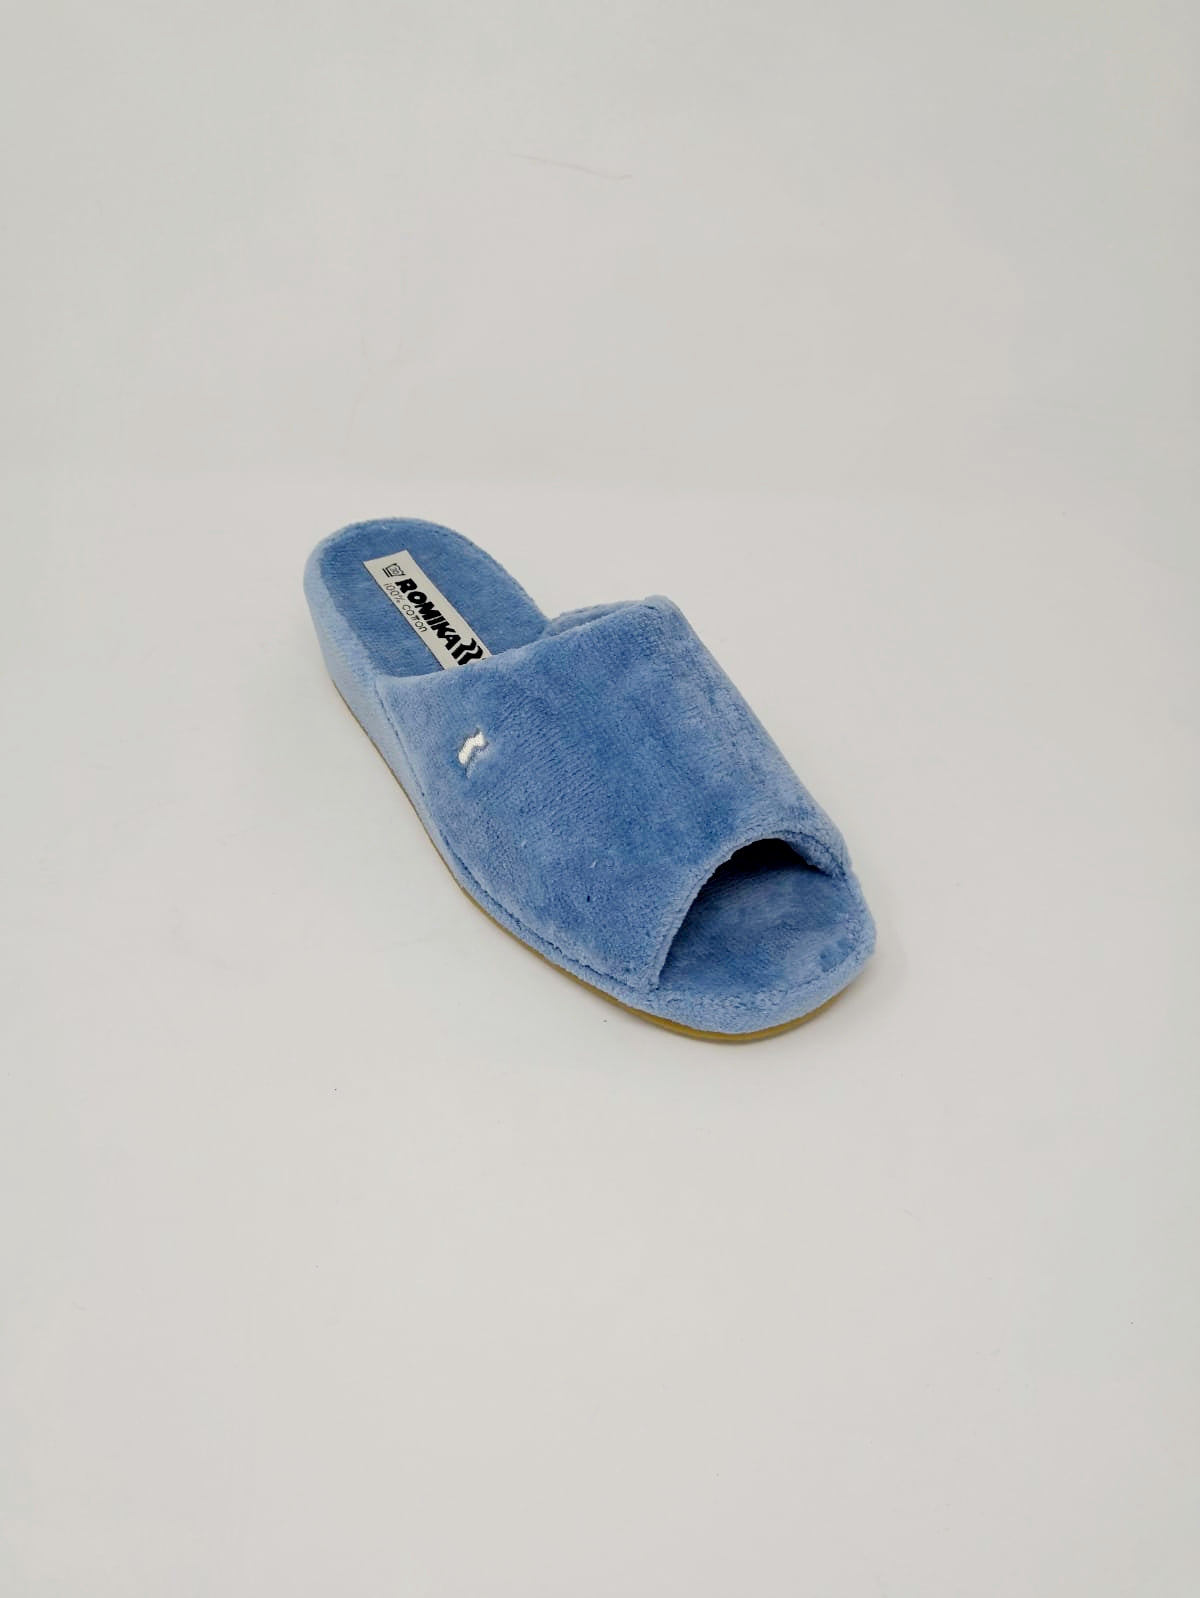 Miami Bleu clair - Chaussures Pirotais 